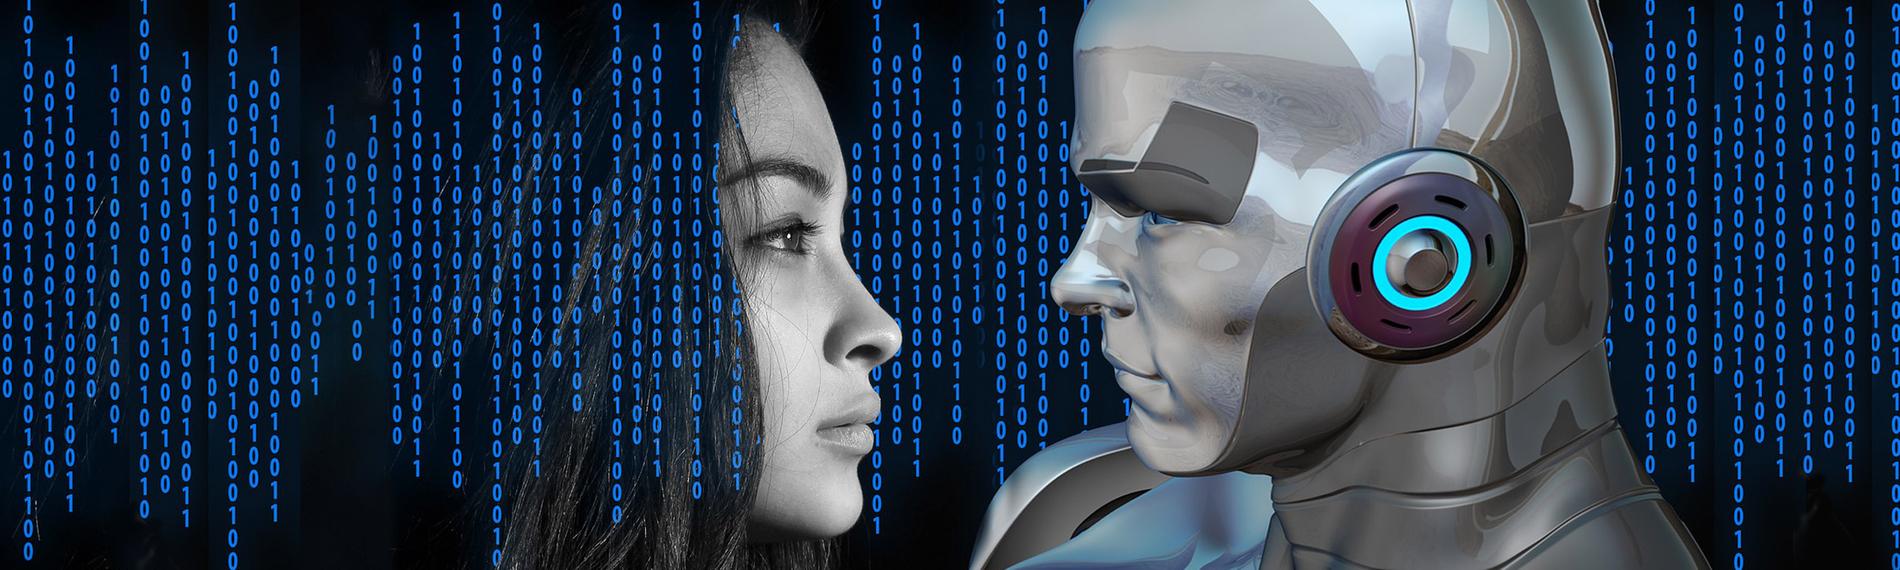 Menschliches Gesicht gegenüber einem Roboter 